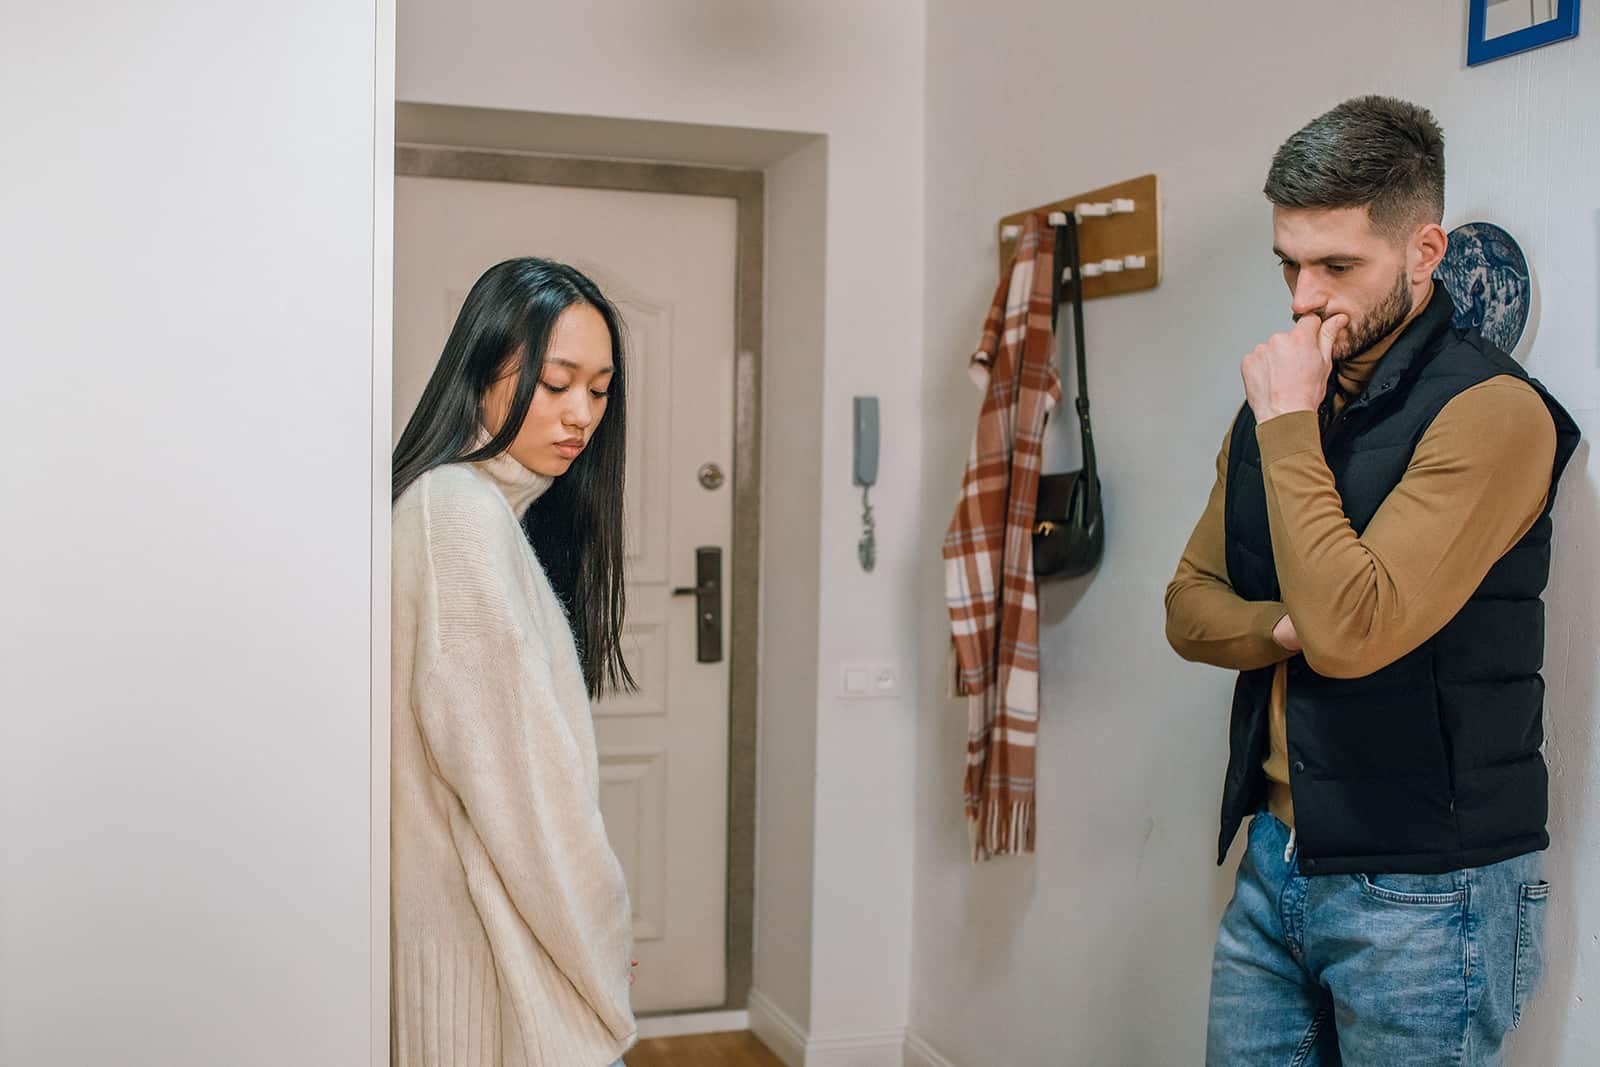 un uomo e una donna in piedi vicino alla porta di un appartamento in un silenzio imbarazzante